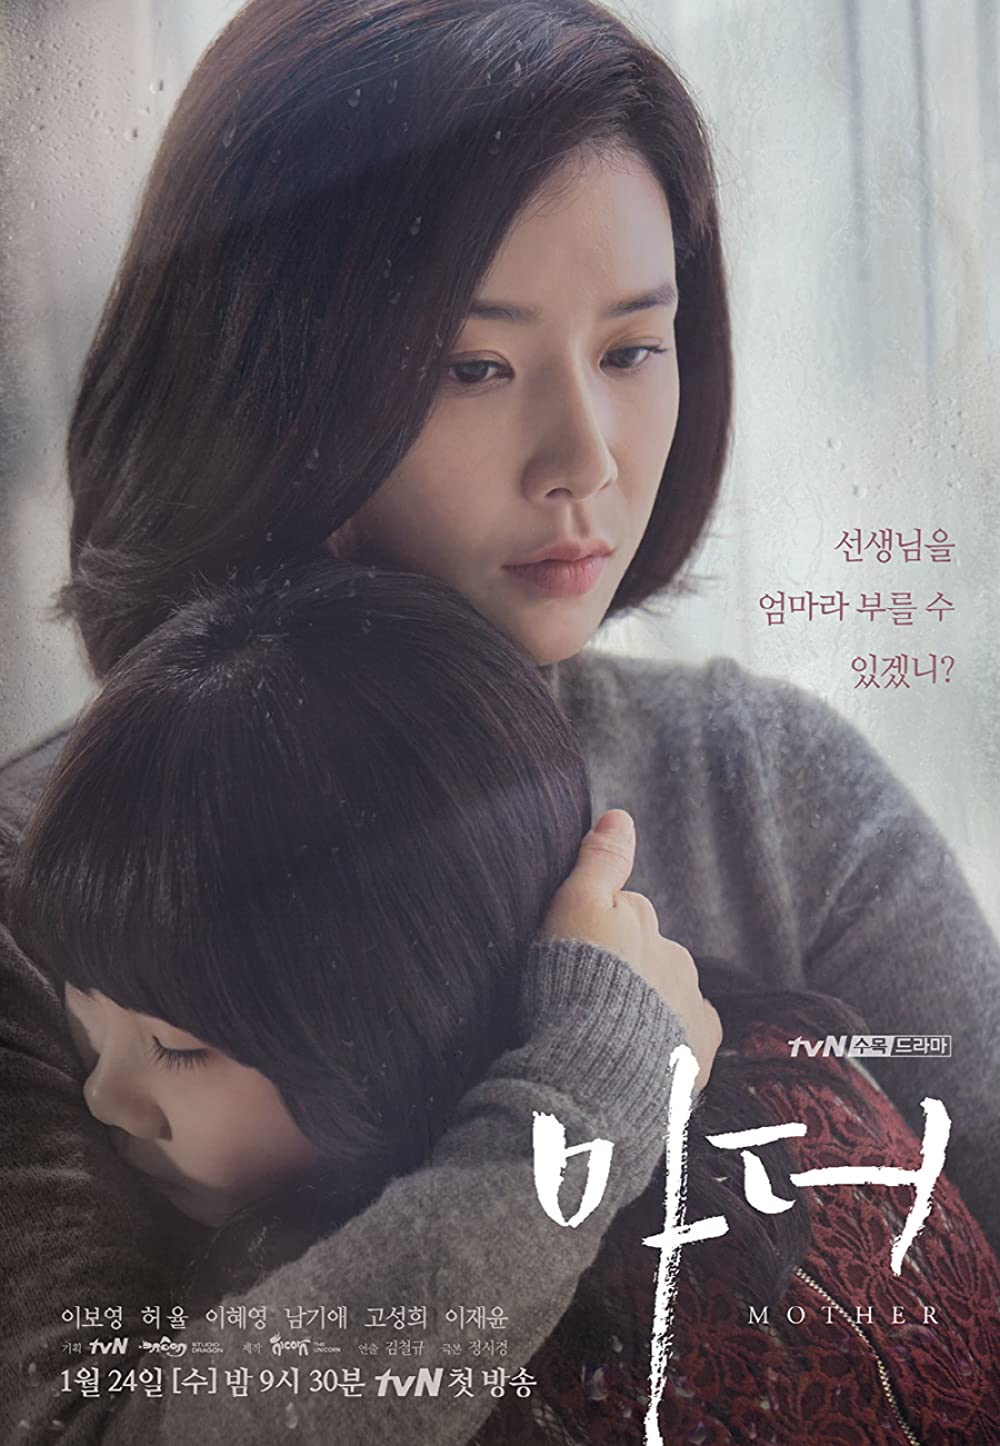 9 Drama Korea kisahkan kehidupan ibu tunggal, penuh tekad perjuangan